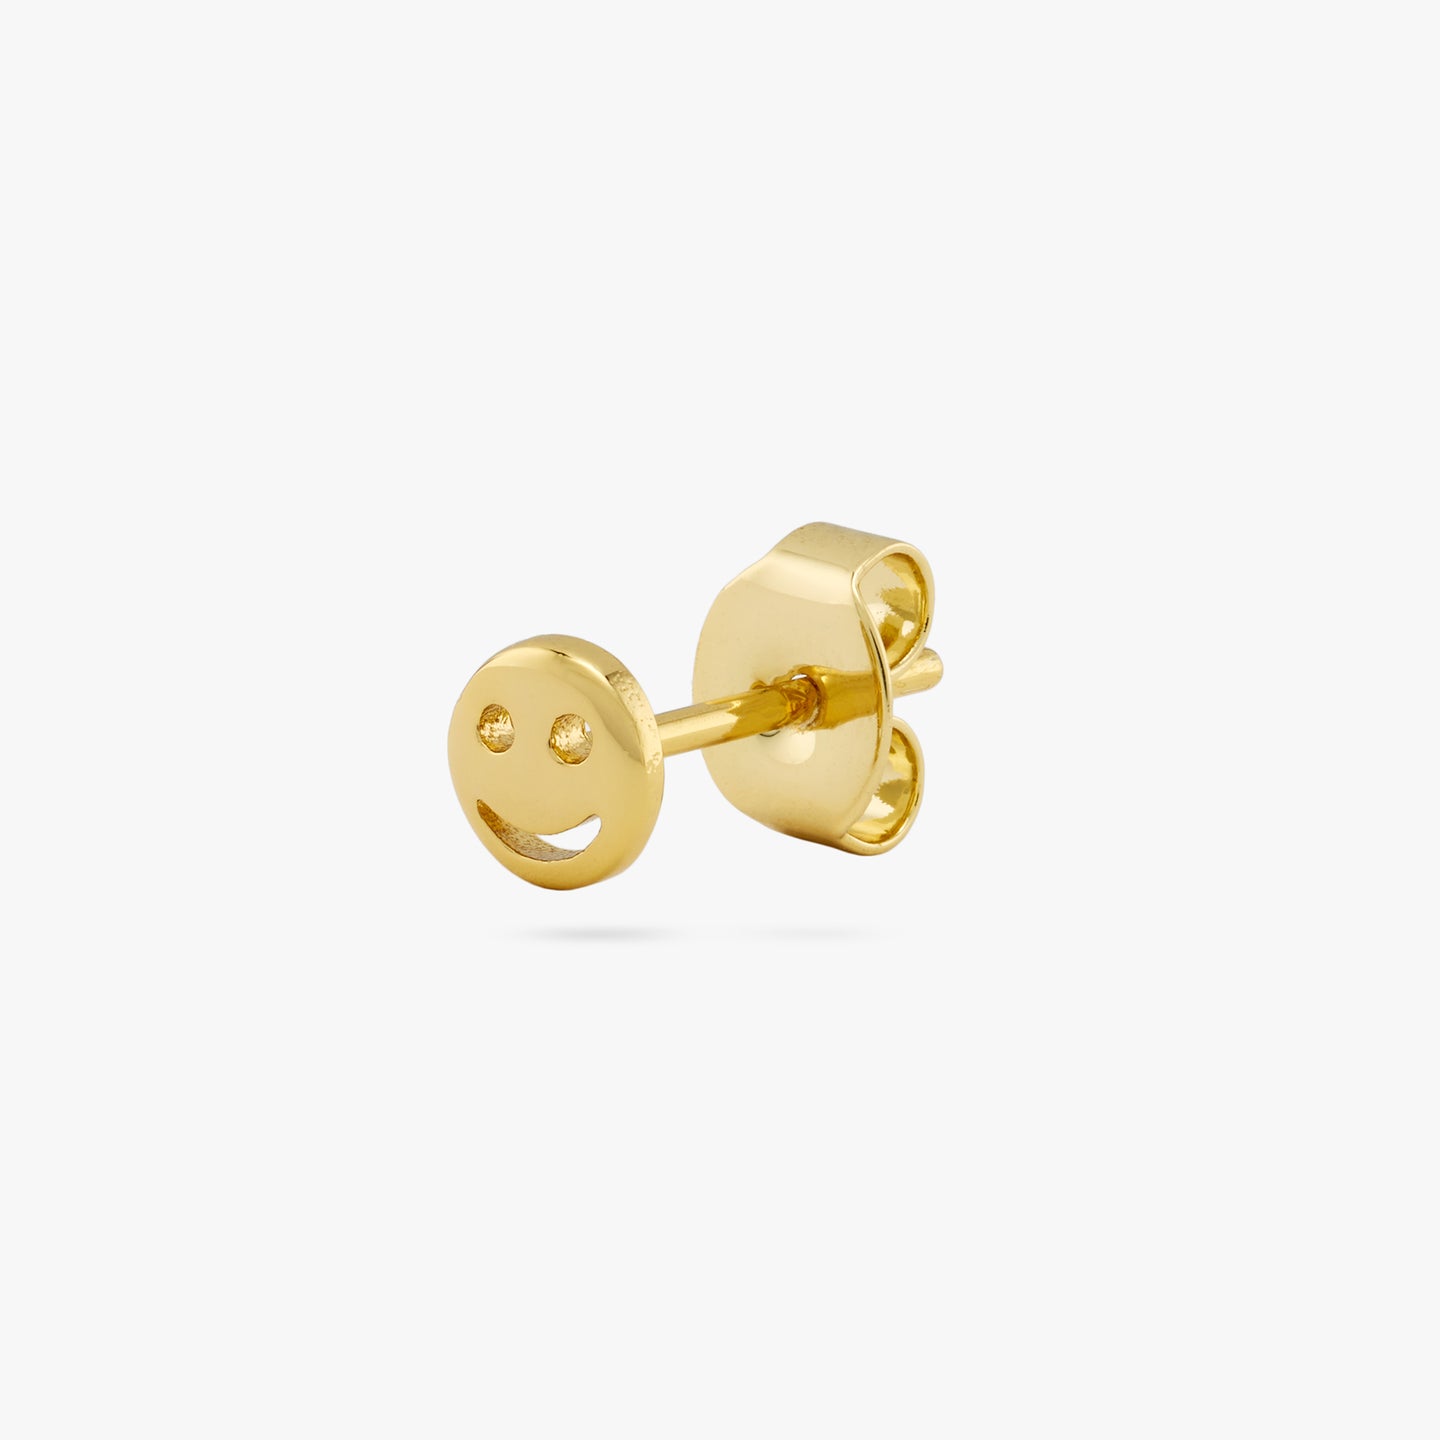 Smiley Mini Ear Stud Earrings Women Girls Ear Accessories Gift Jewelry   Fruugo KR